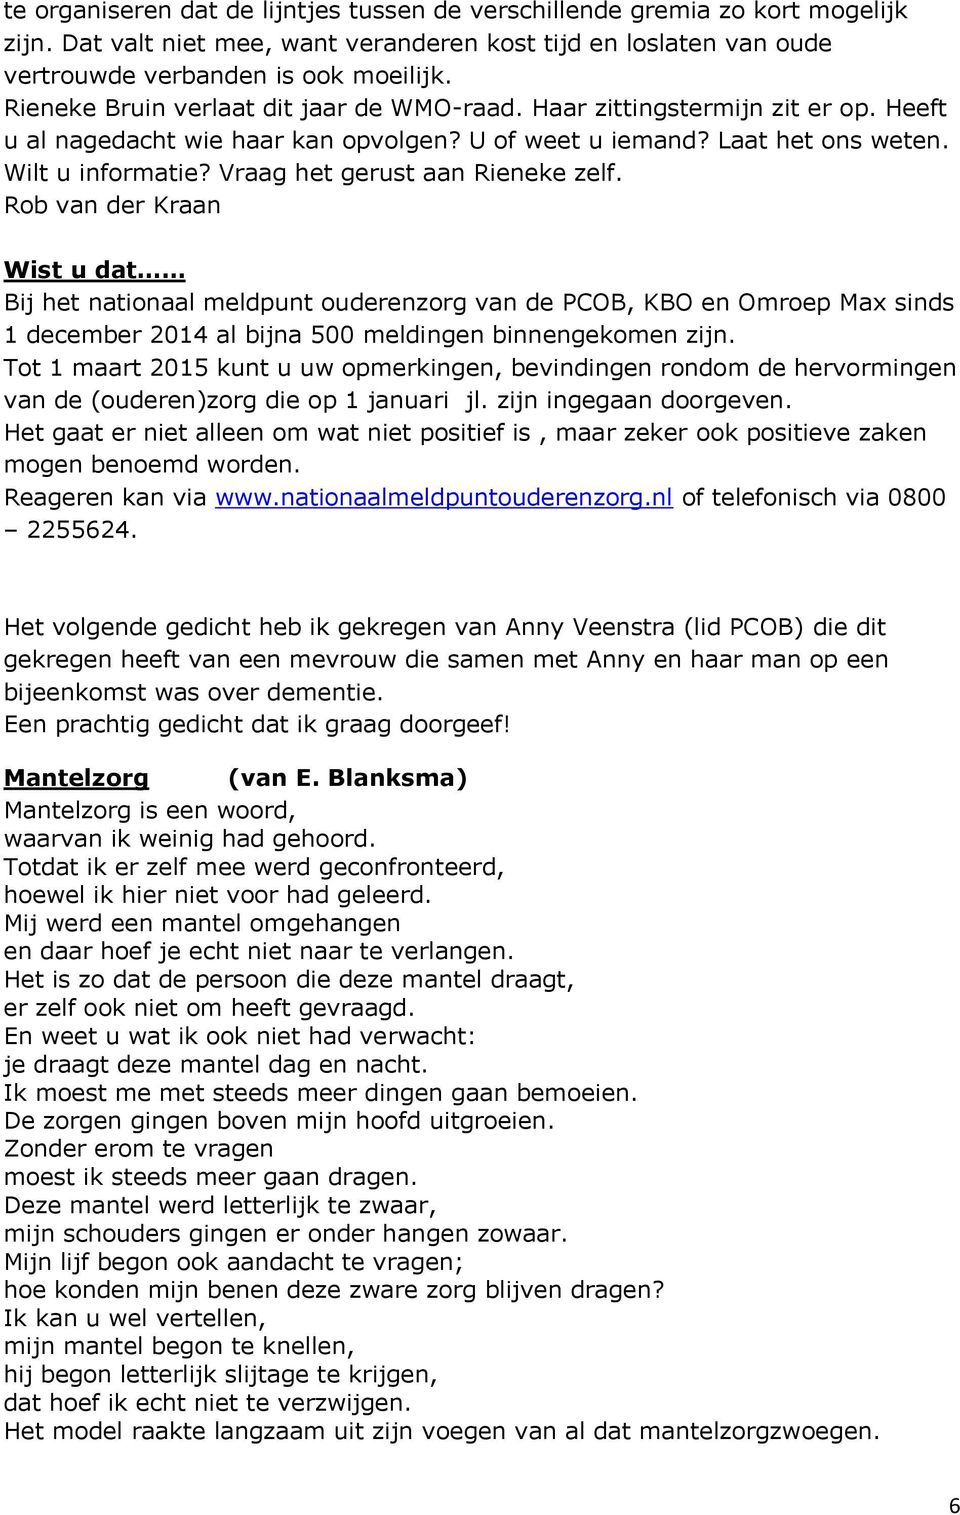 Vraag het gerust aan Rieneke zelf. Rob van der Kraan Wist u dat Bij het nationaal meldpunt ouderenzorg van de PCOB, KBO en Omroep Max sinds 1 december 2014 al bijna 500 meldingen binnengekomen zijn.